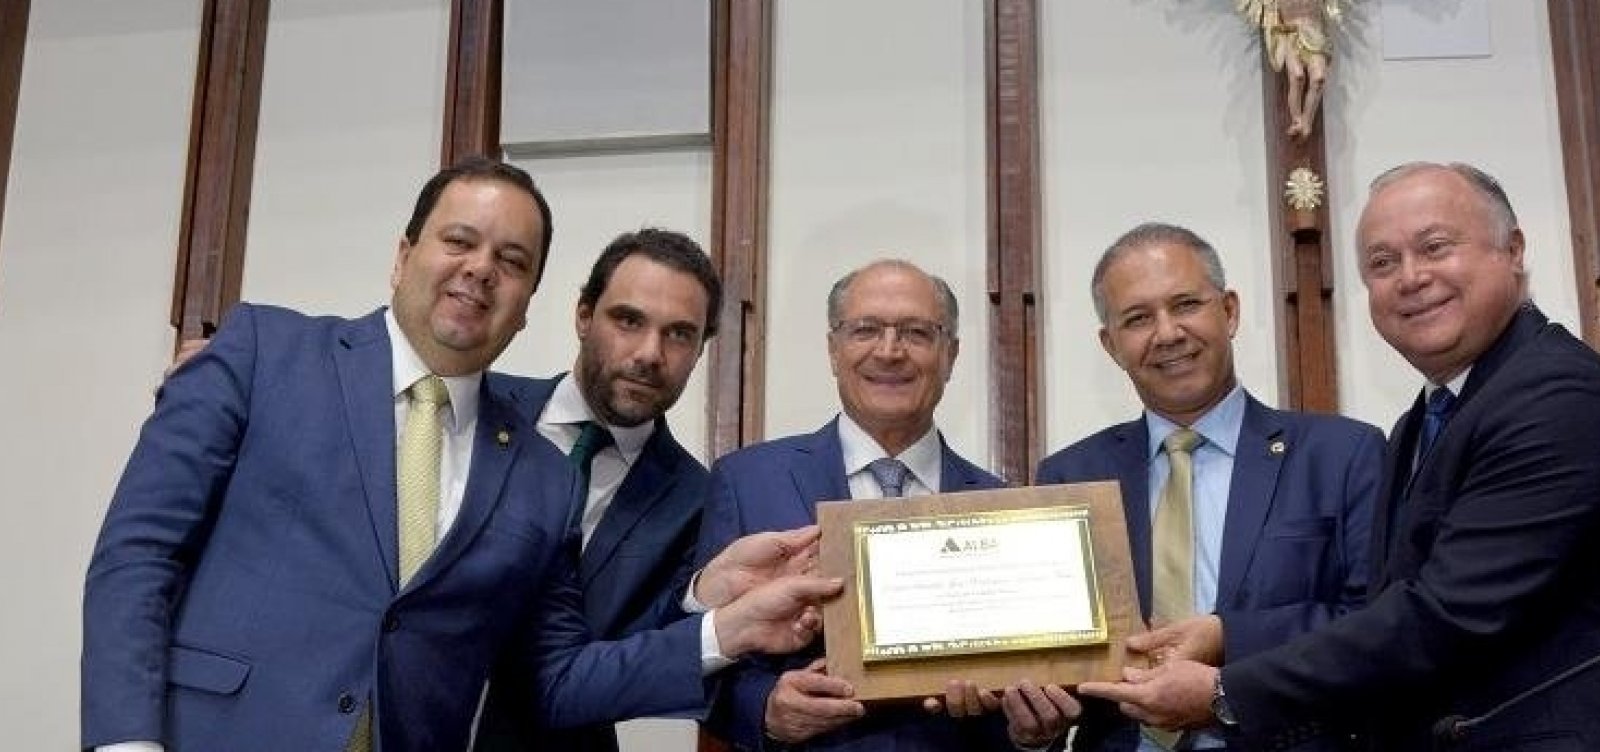 Alckmin recebe titulo de cidadão baiano, critica Bolsonaro e defende ACM Neto